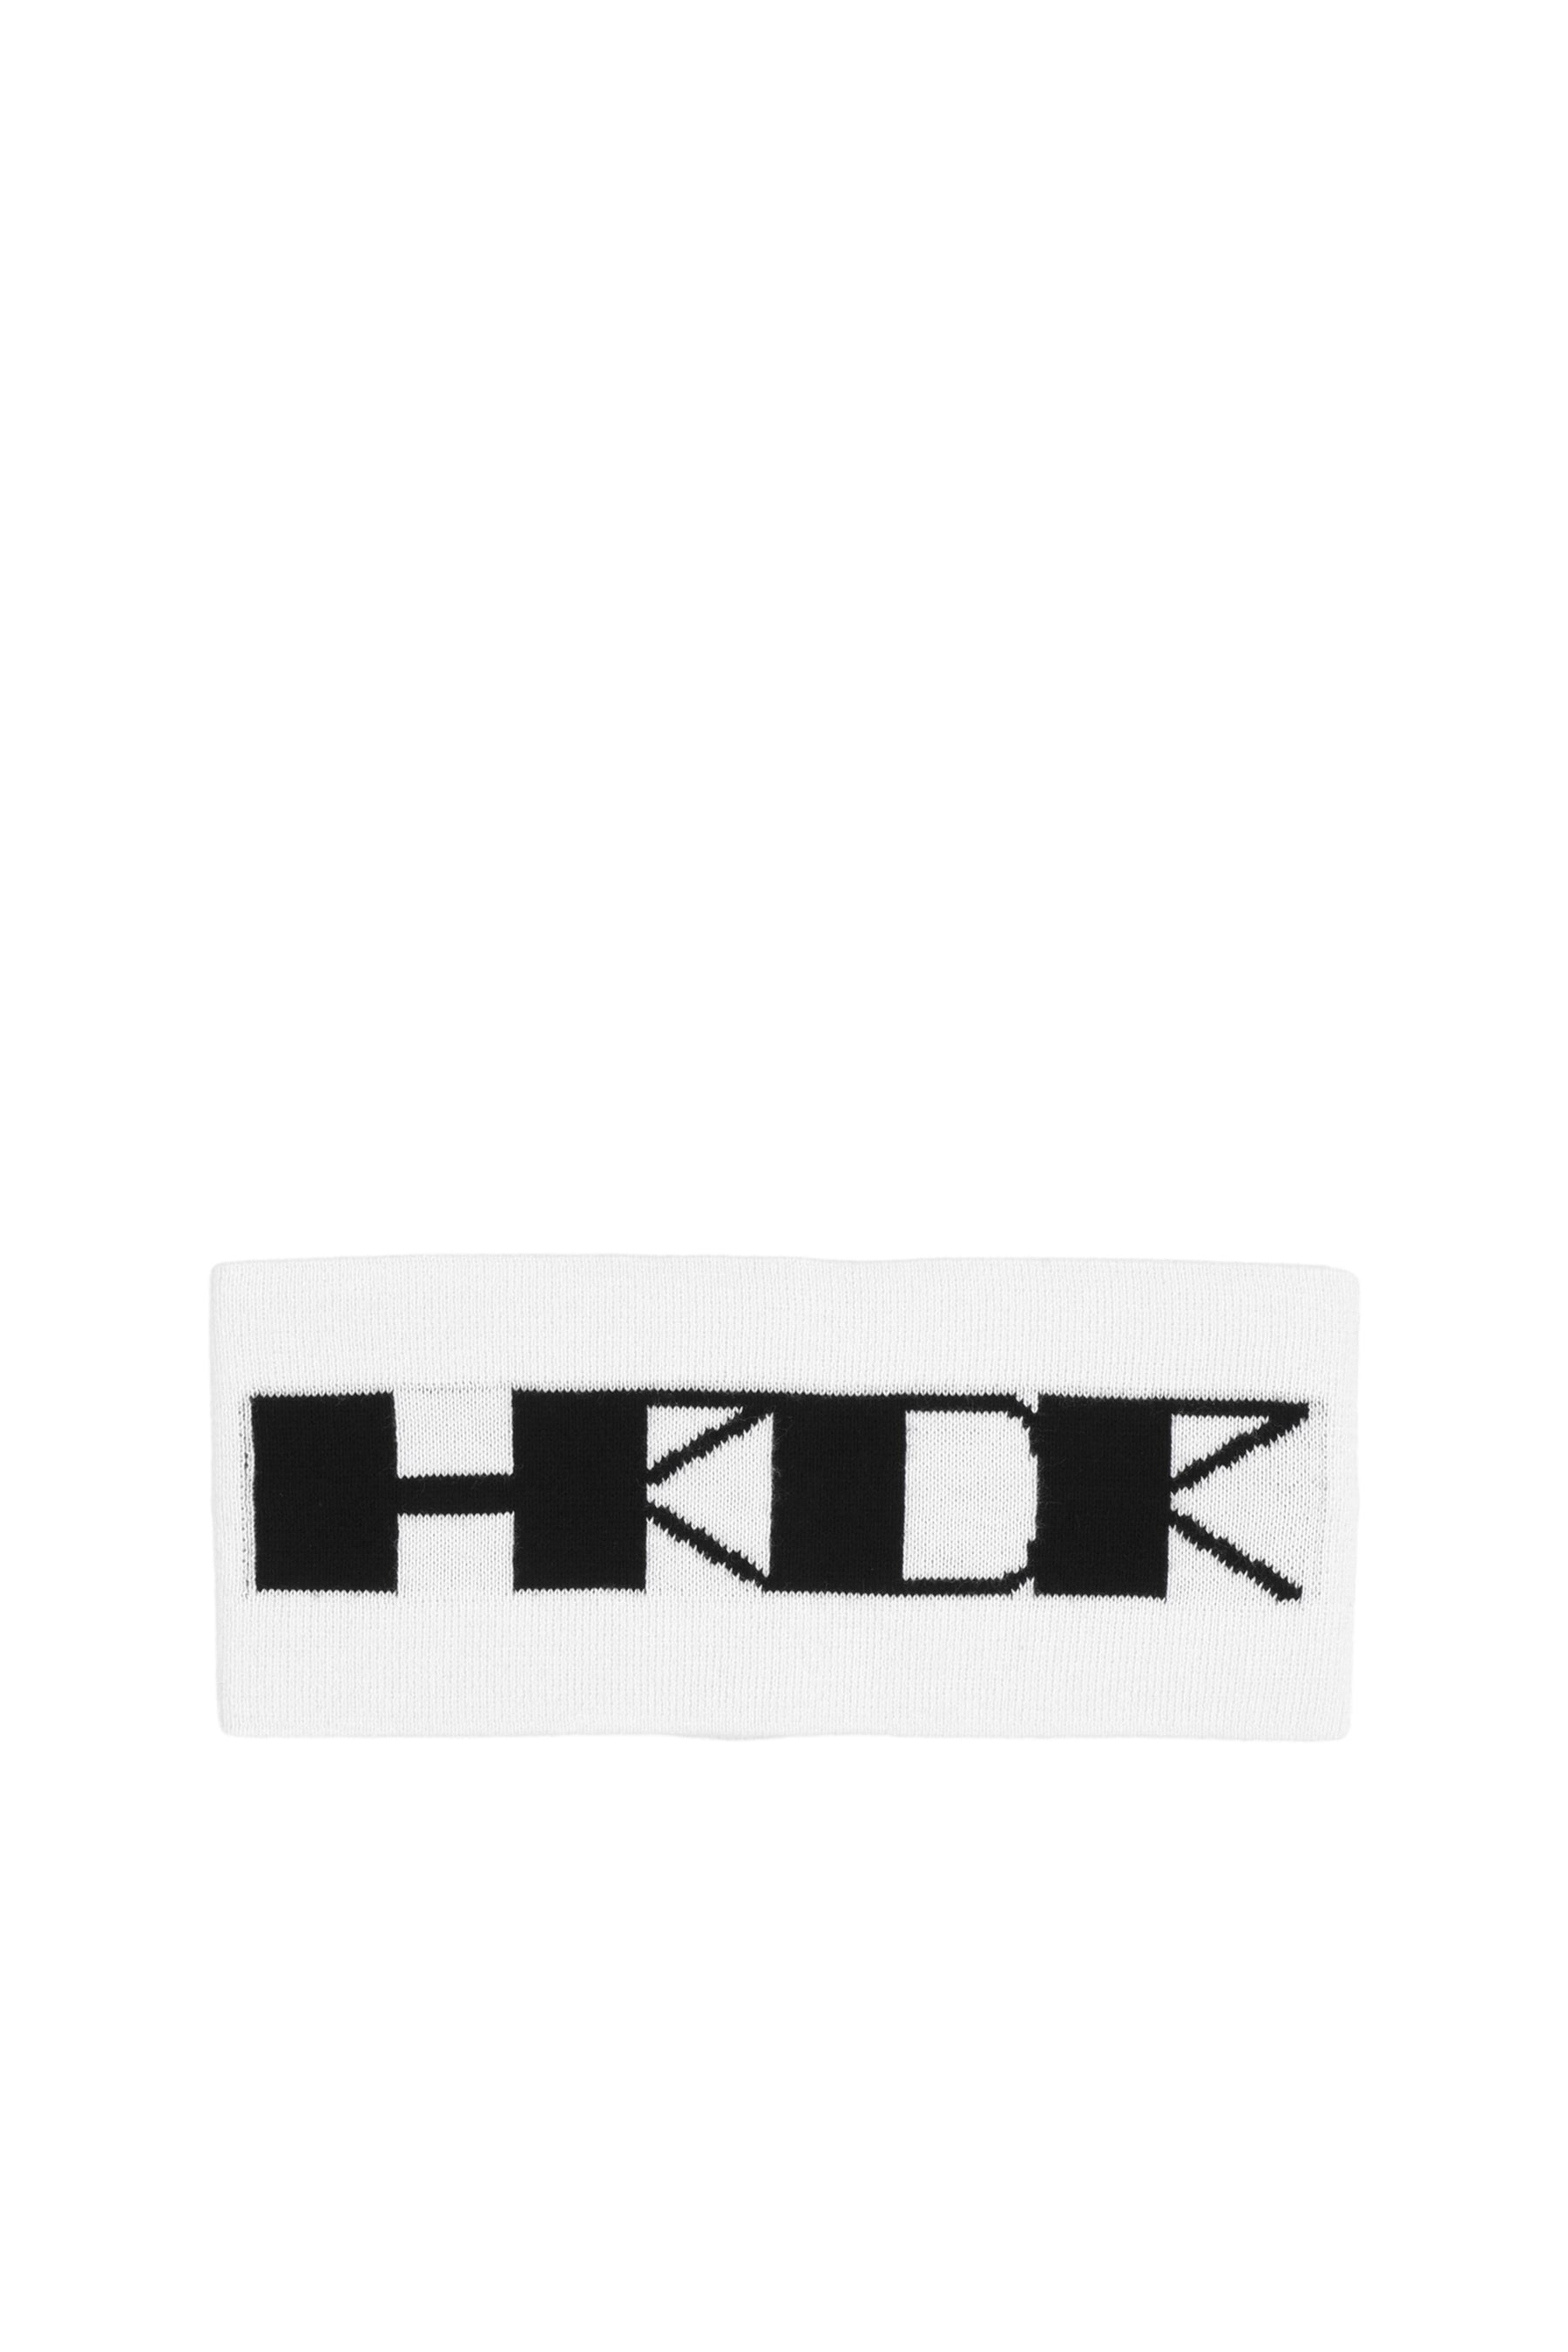 HRDR HEADBAND / MILK BLK - 1